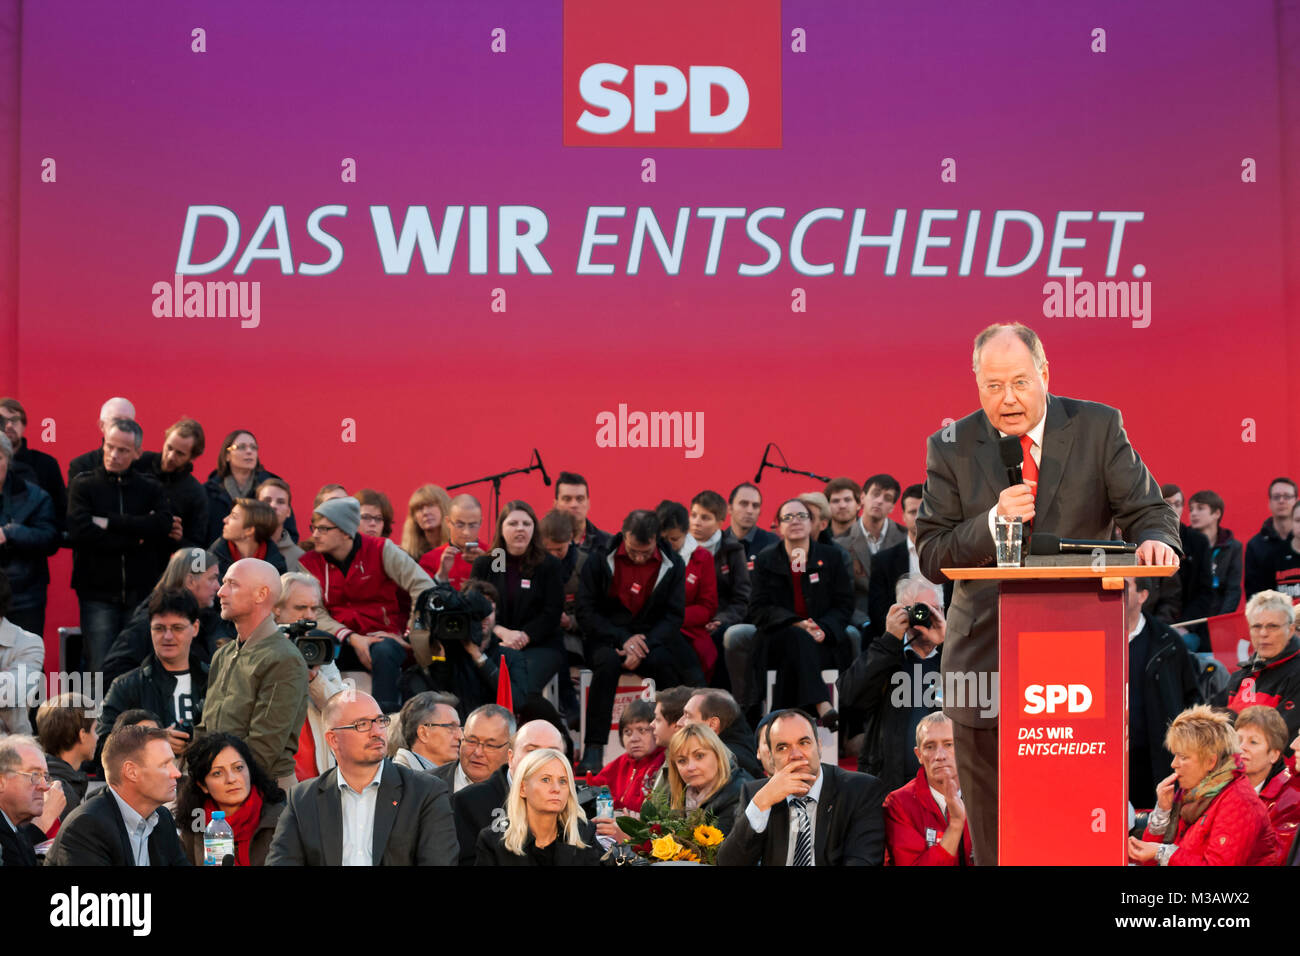 Peer Steinbrück beim Wahlkampf der SPD Kundgebung zur Bundestagswahl 2013 'Endspurt mit Peer Steinbrück' auf dem Berliner Alexanderplatz. Foto de stock